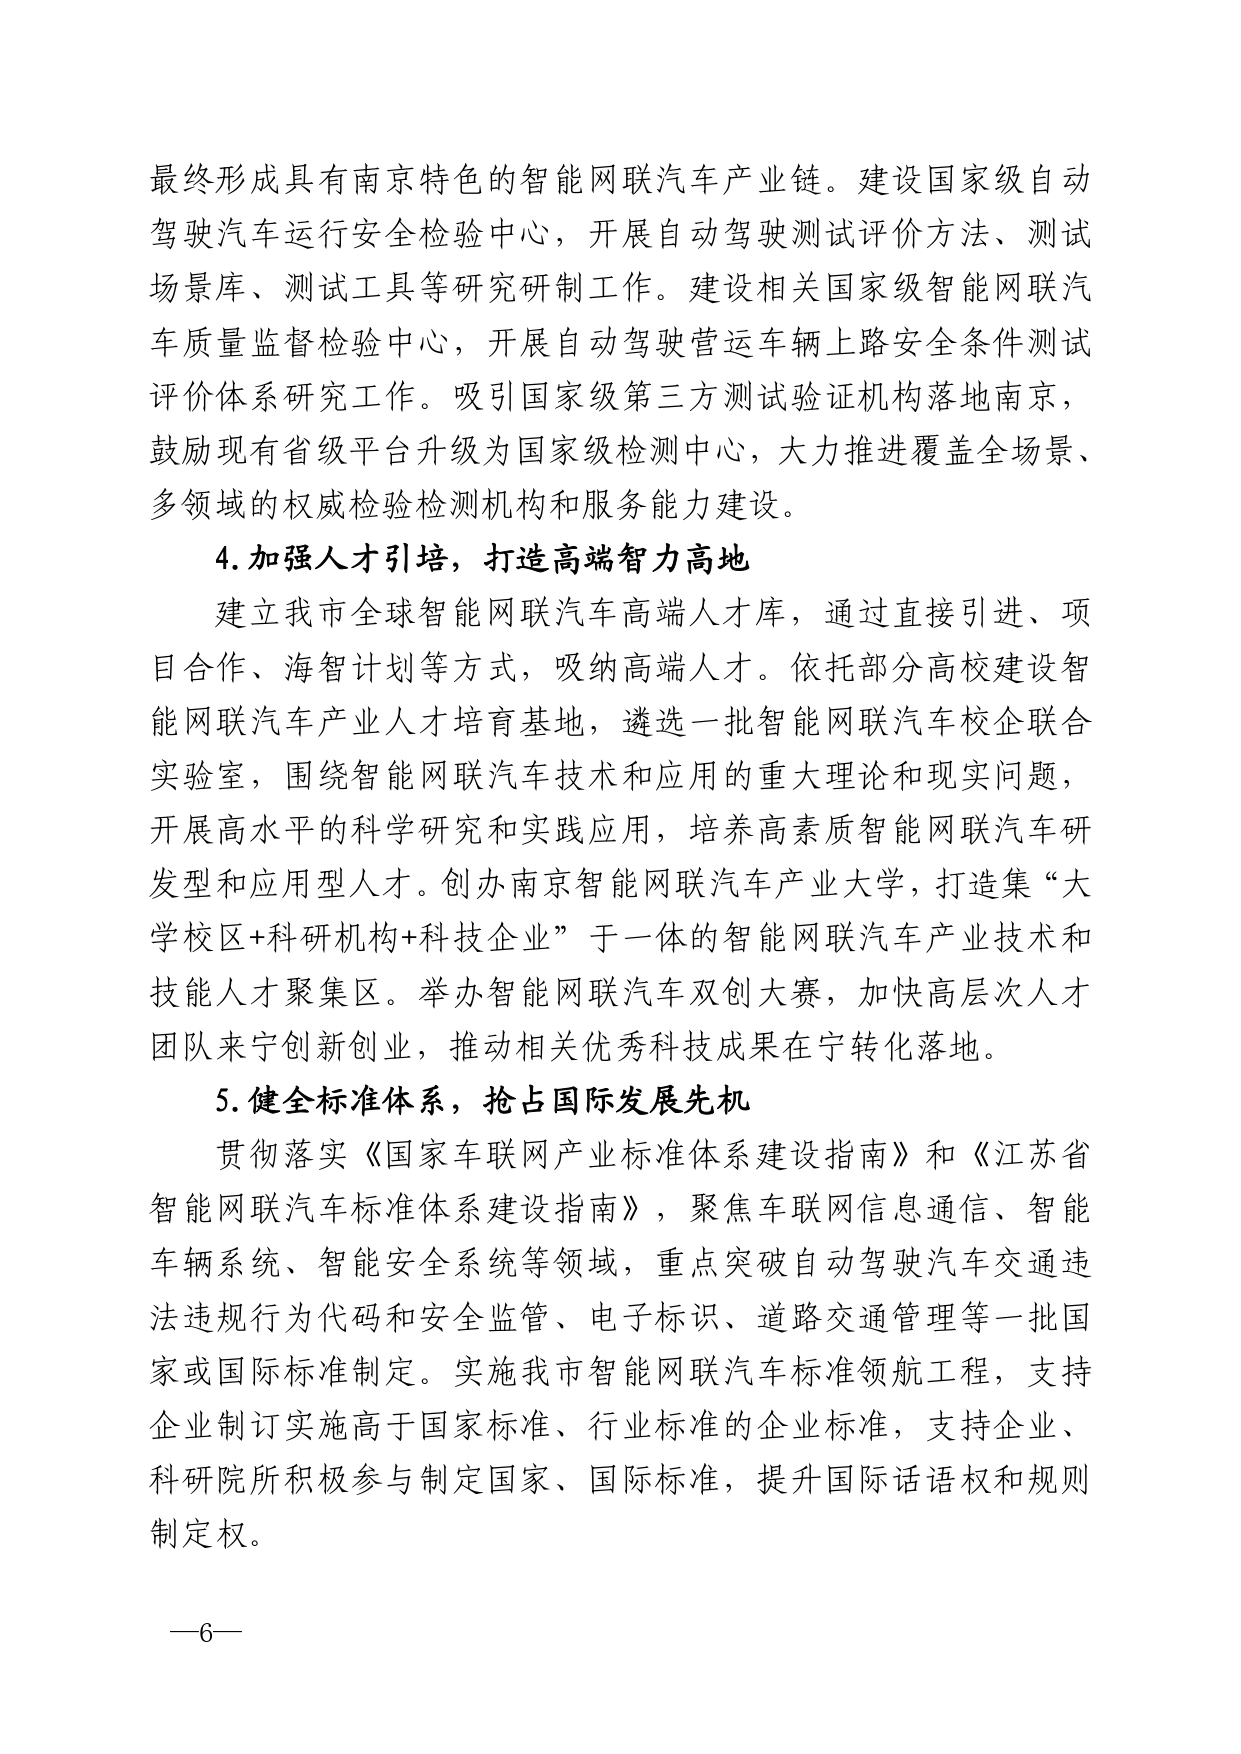 2021年第4期（关于南京智能网联汽车产业高质量发展建议）_page-0006.jpg